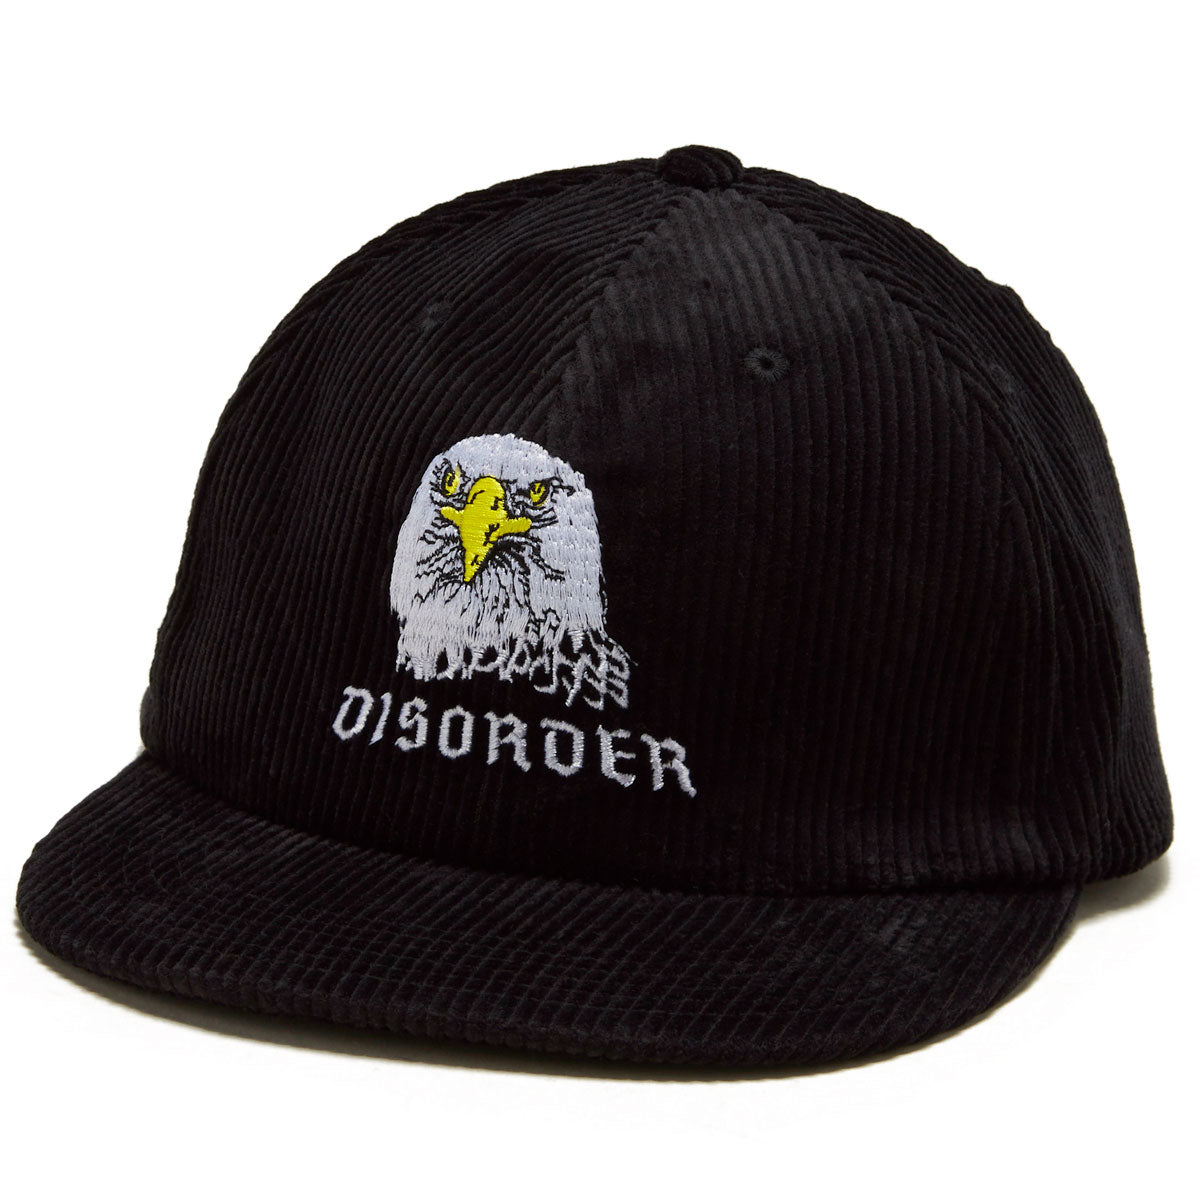 Disorder Eagle Scout Snapback Hat - Black image 1